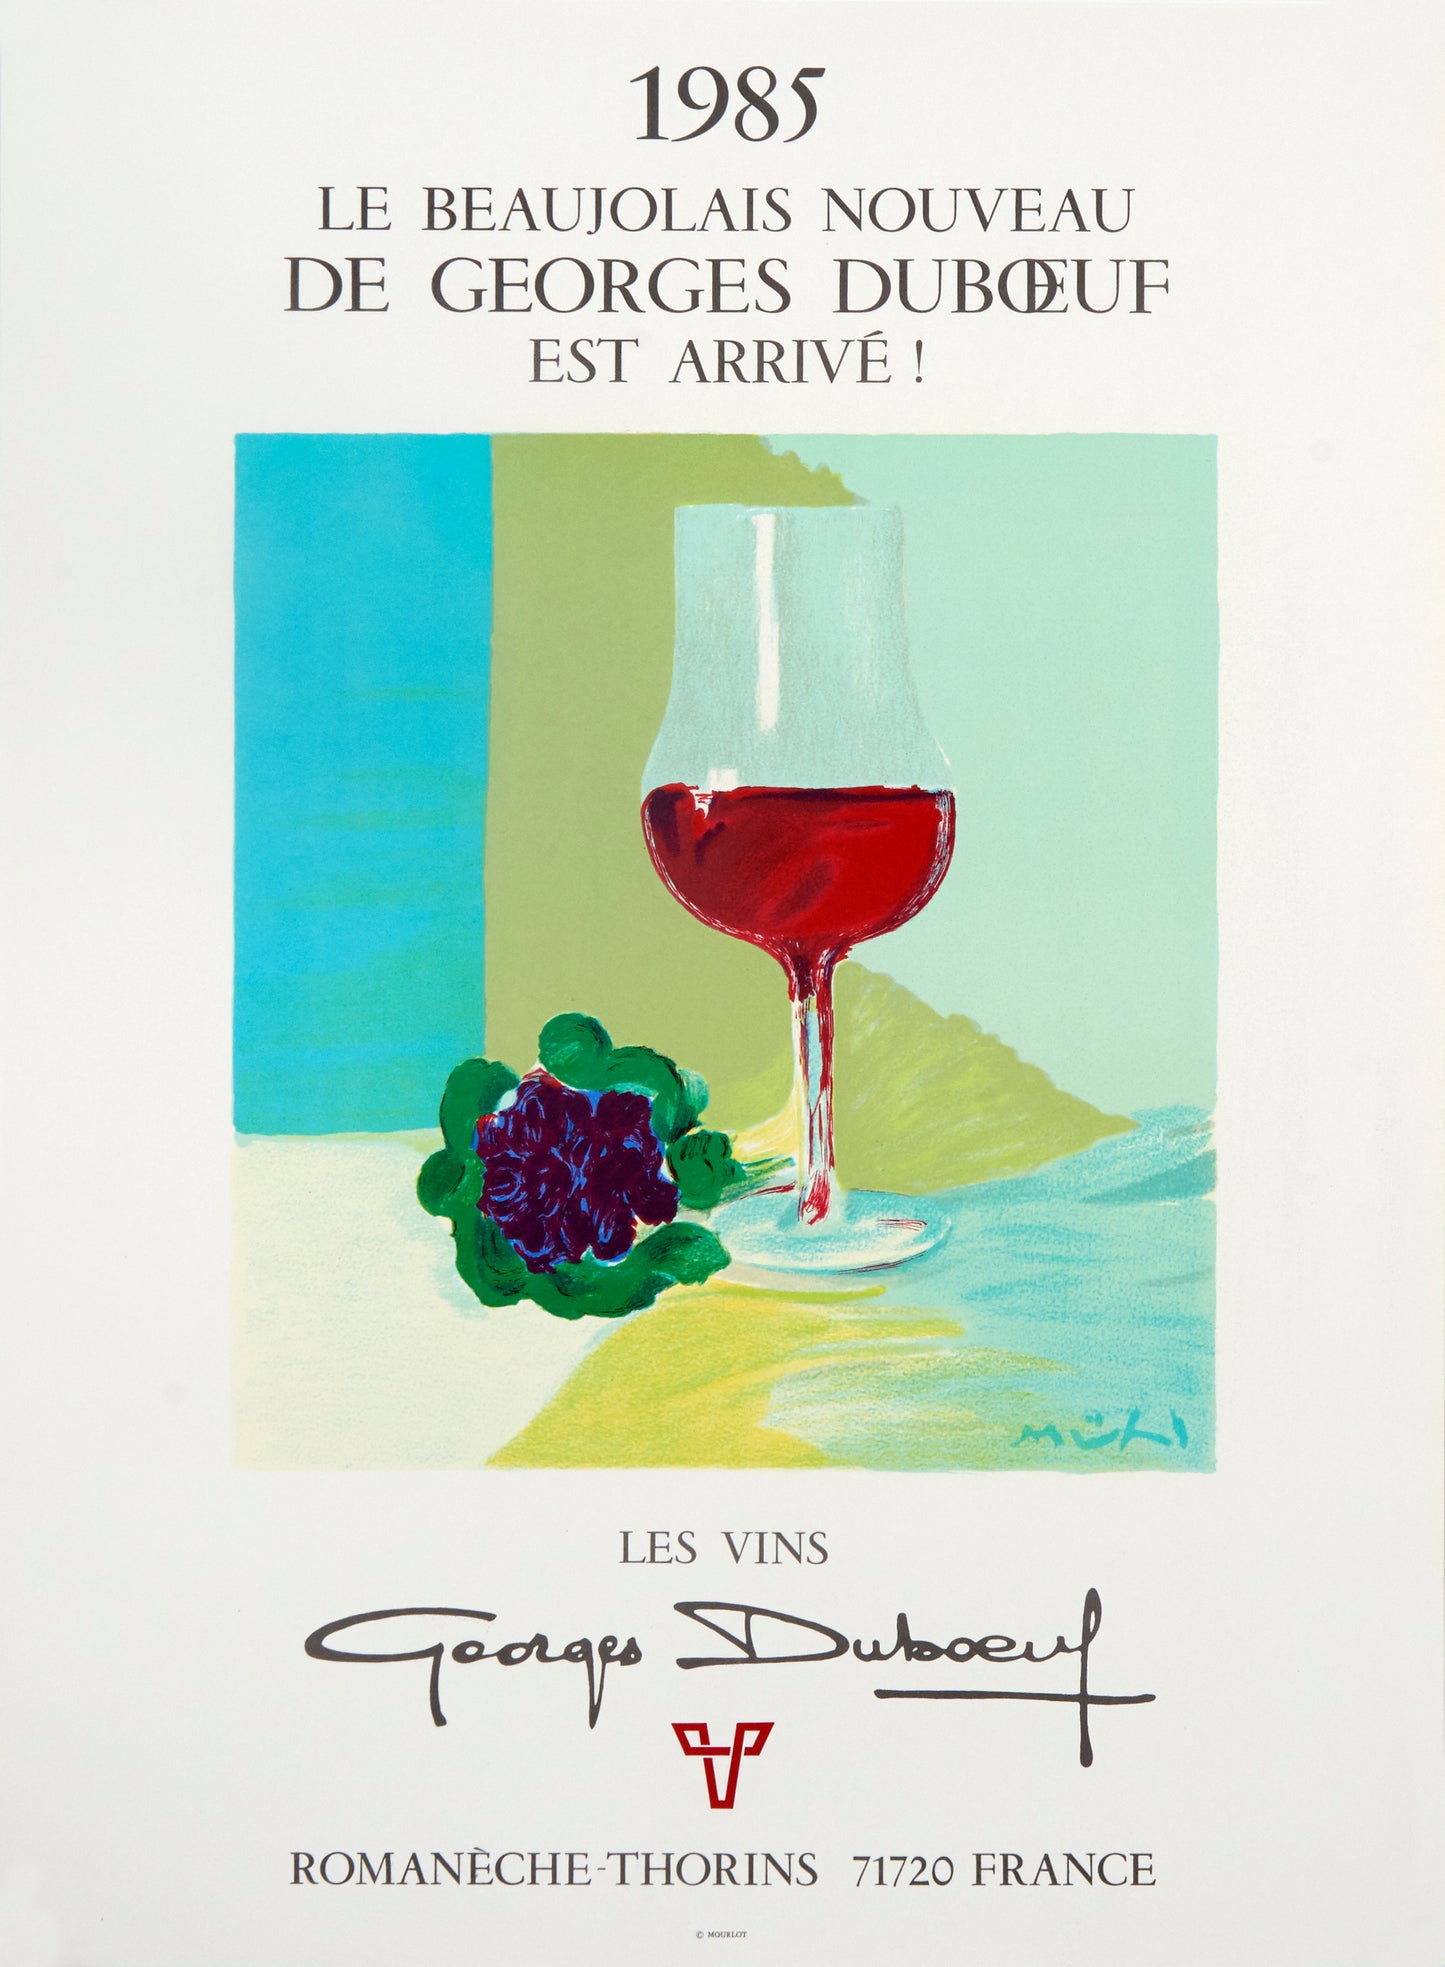 Le Beaujolais Nouveau - Les Vins Georges Duboeuf by Roger Mühl, 1985 - Mourlot Editions - Fine_Art - Poster - Lithograph - Wall Art - Vintage - Prints - Original